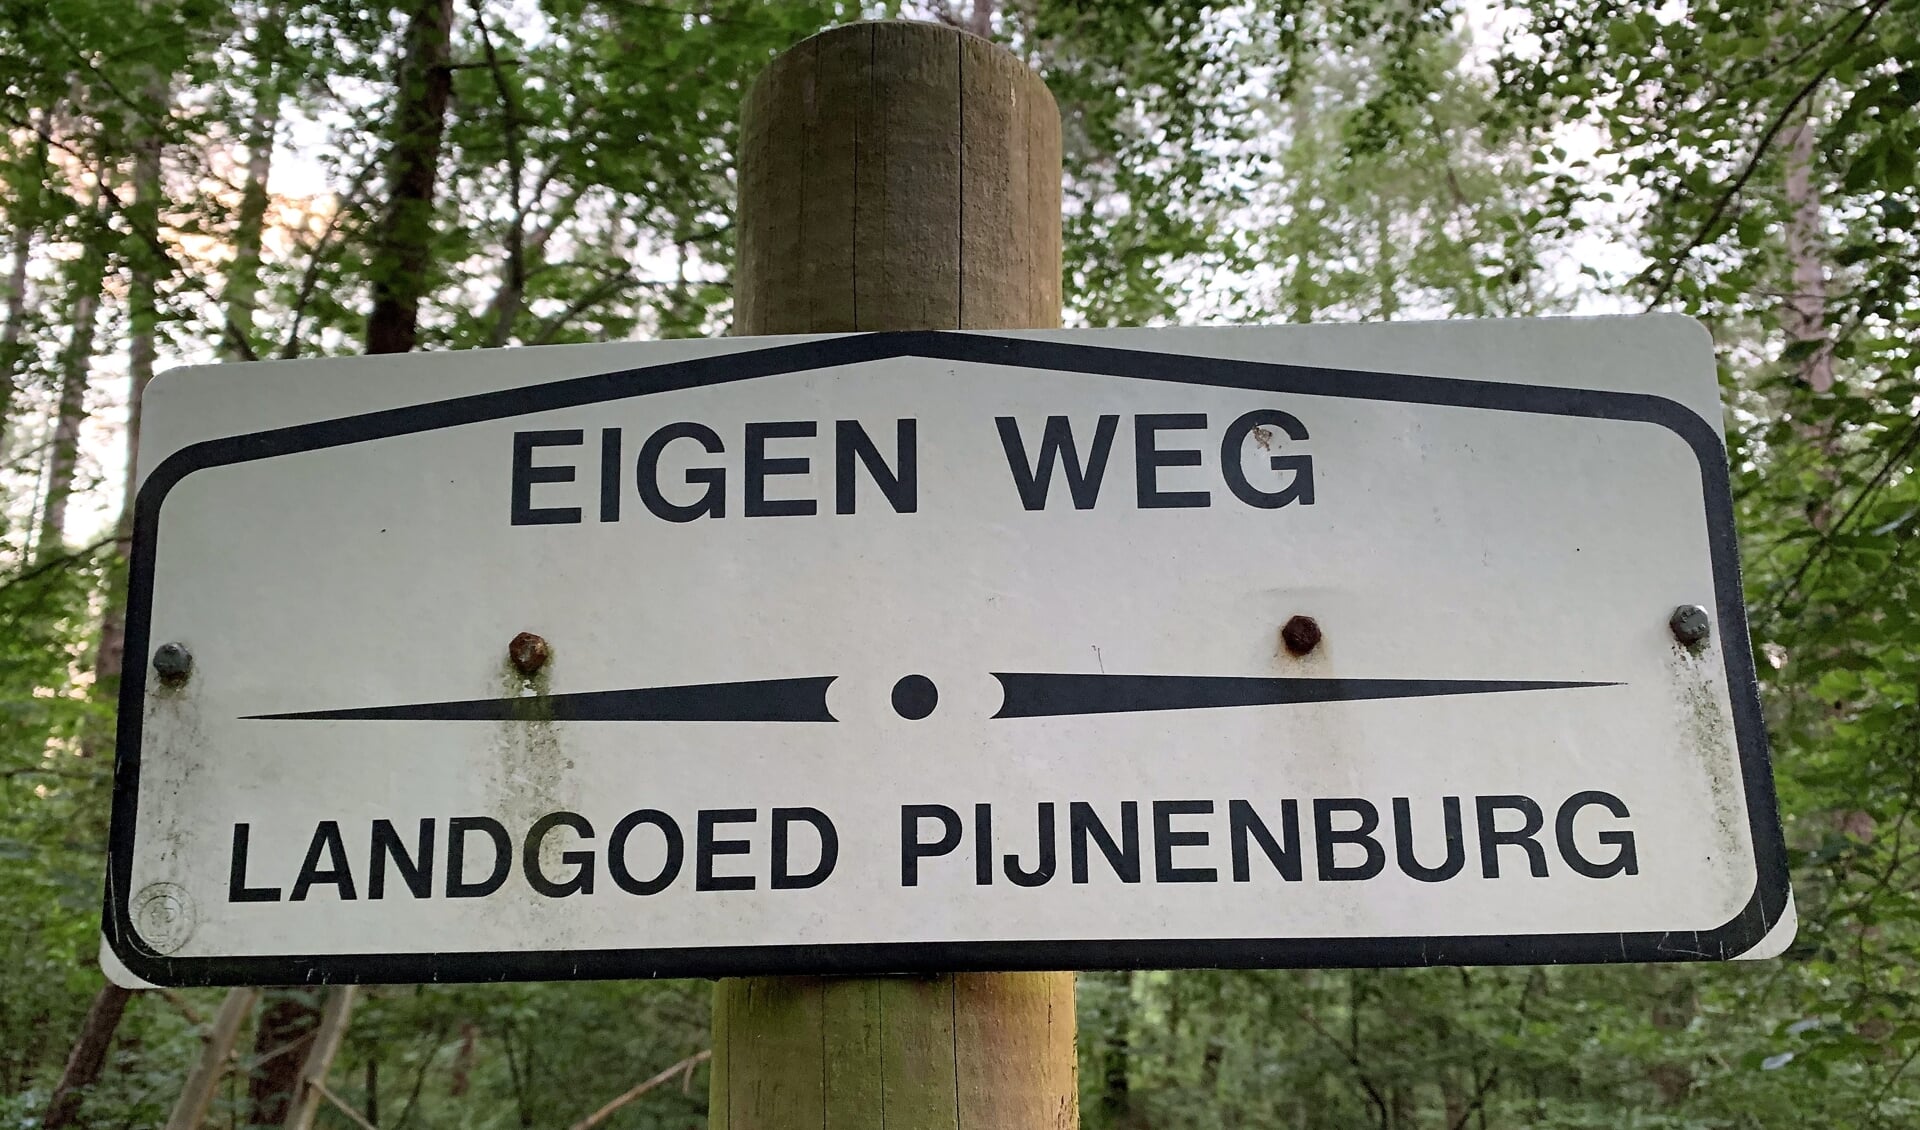 Landgoed Pijnenburg is al 160 jaar in bezit van de familie Insinger, maar is opengesteld voor wandelaars. 